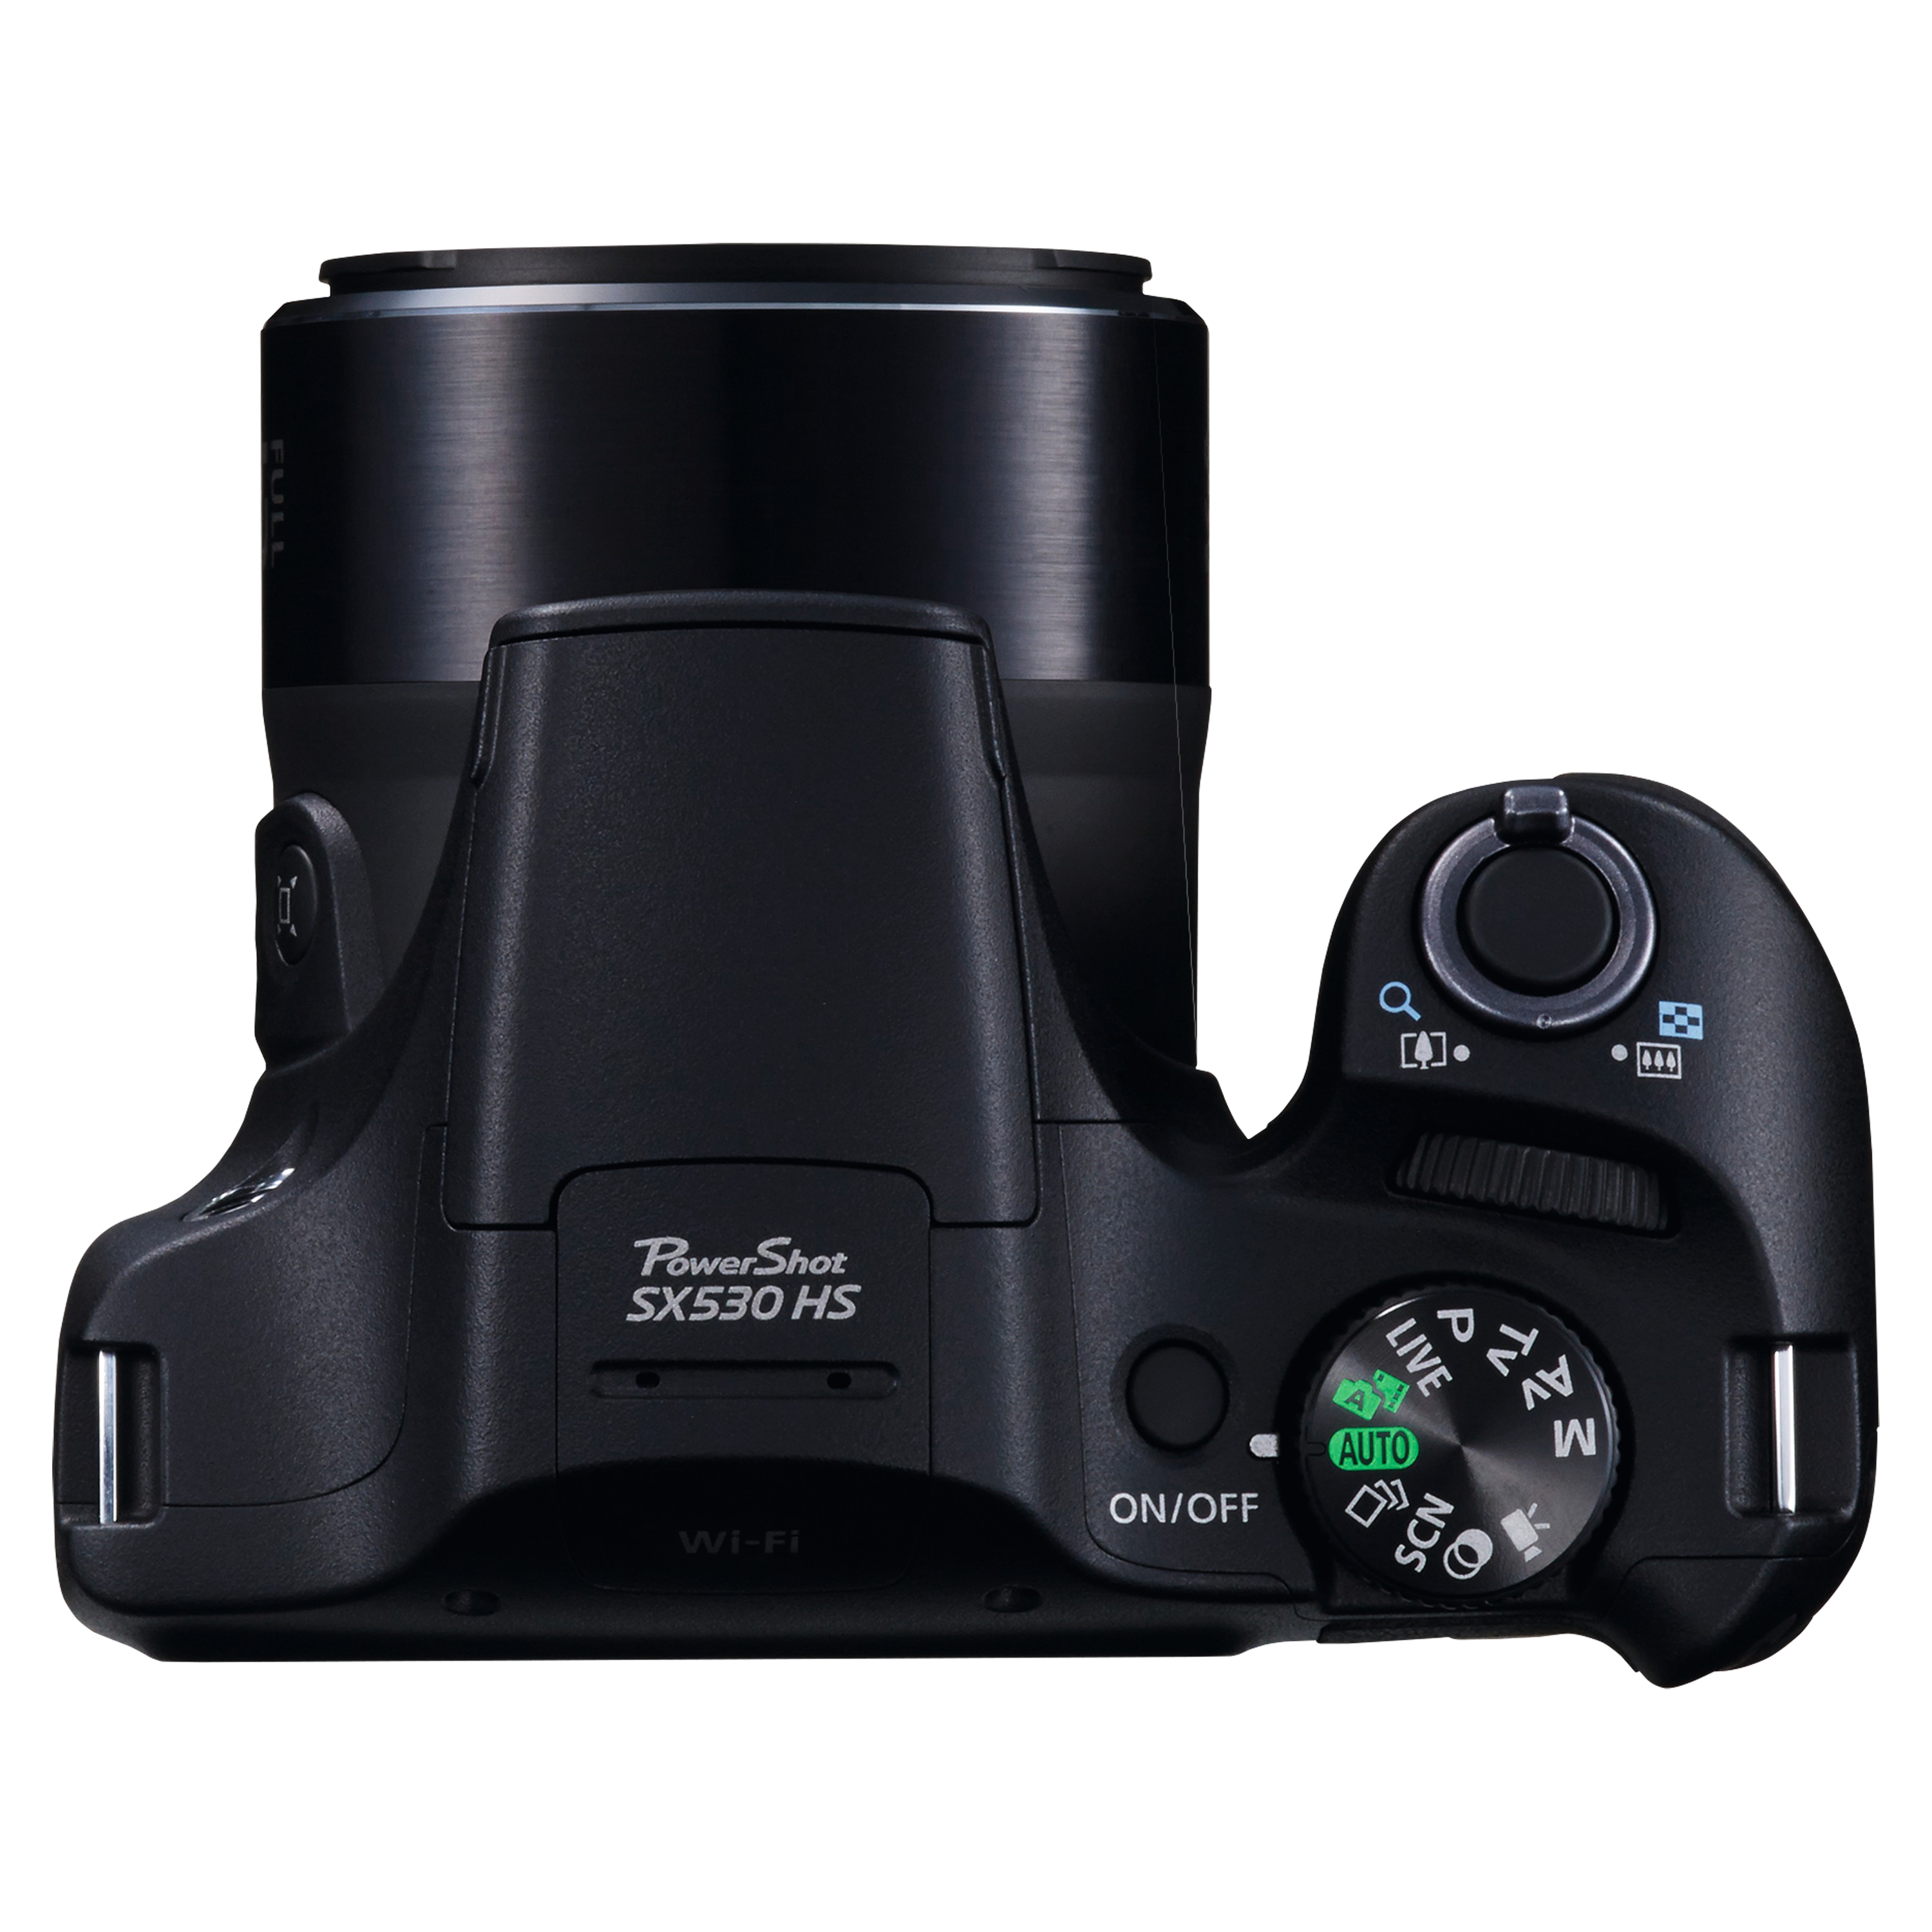 CANON PowerShot SX530 HS Digitalkamera, 7,5 cm (3'') TFT-Display, 16 MP, 50-fach optischer Zoom, WiFi, Full HD Videoaufnahme, Front-Dial, Fernbedienung über Smartphone, ergonomisches Design